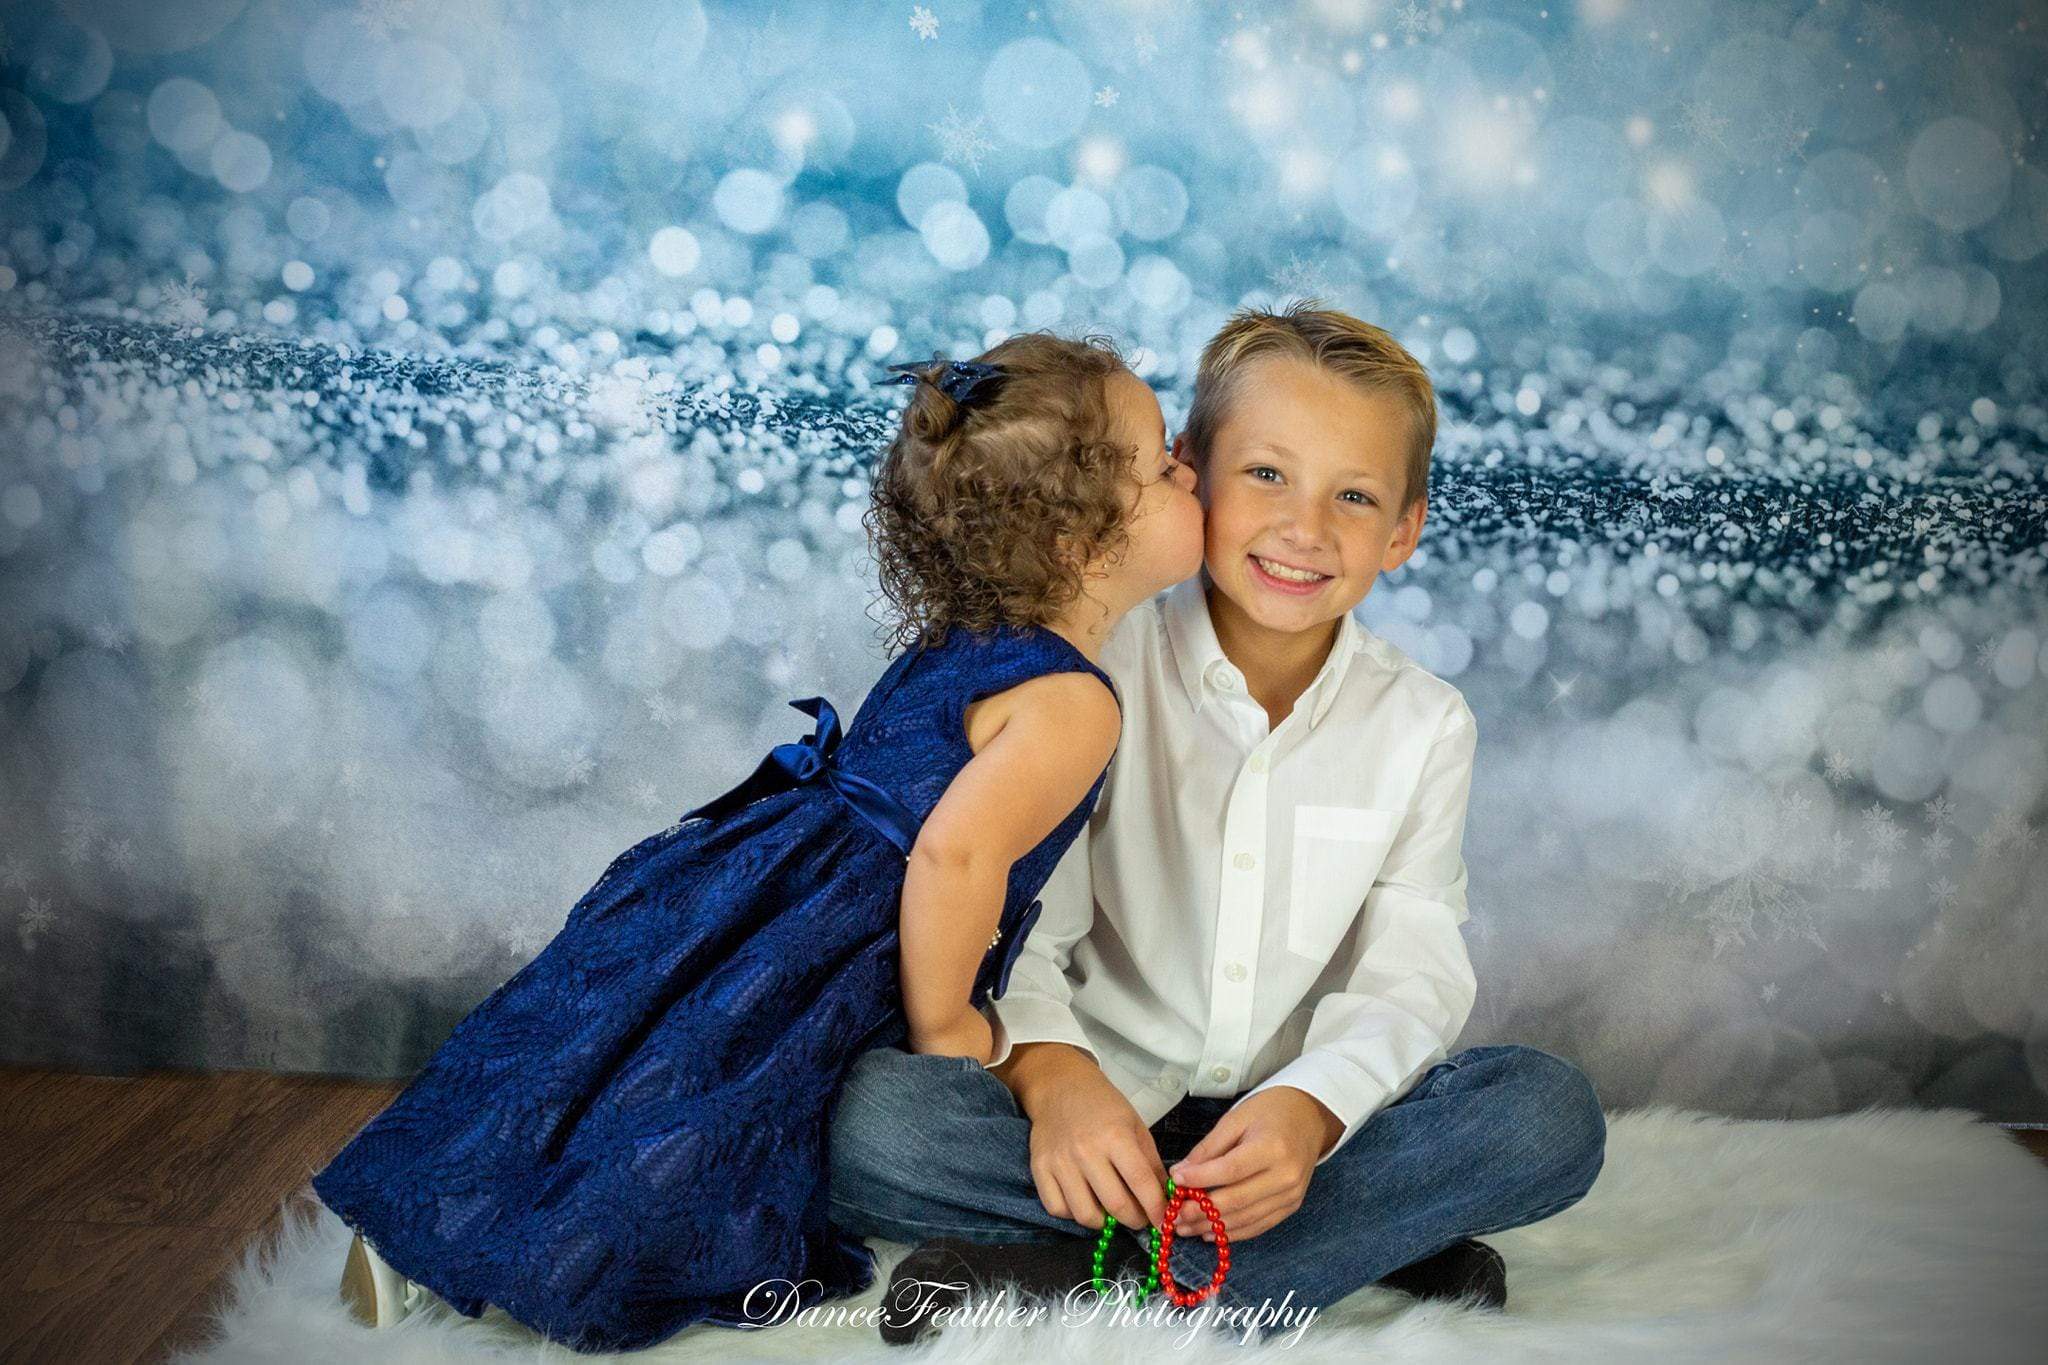 Kate写真のブルーボケクリスマススノーフレークの背景